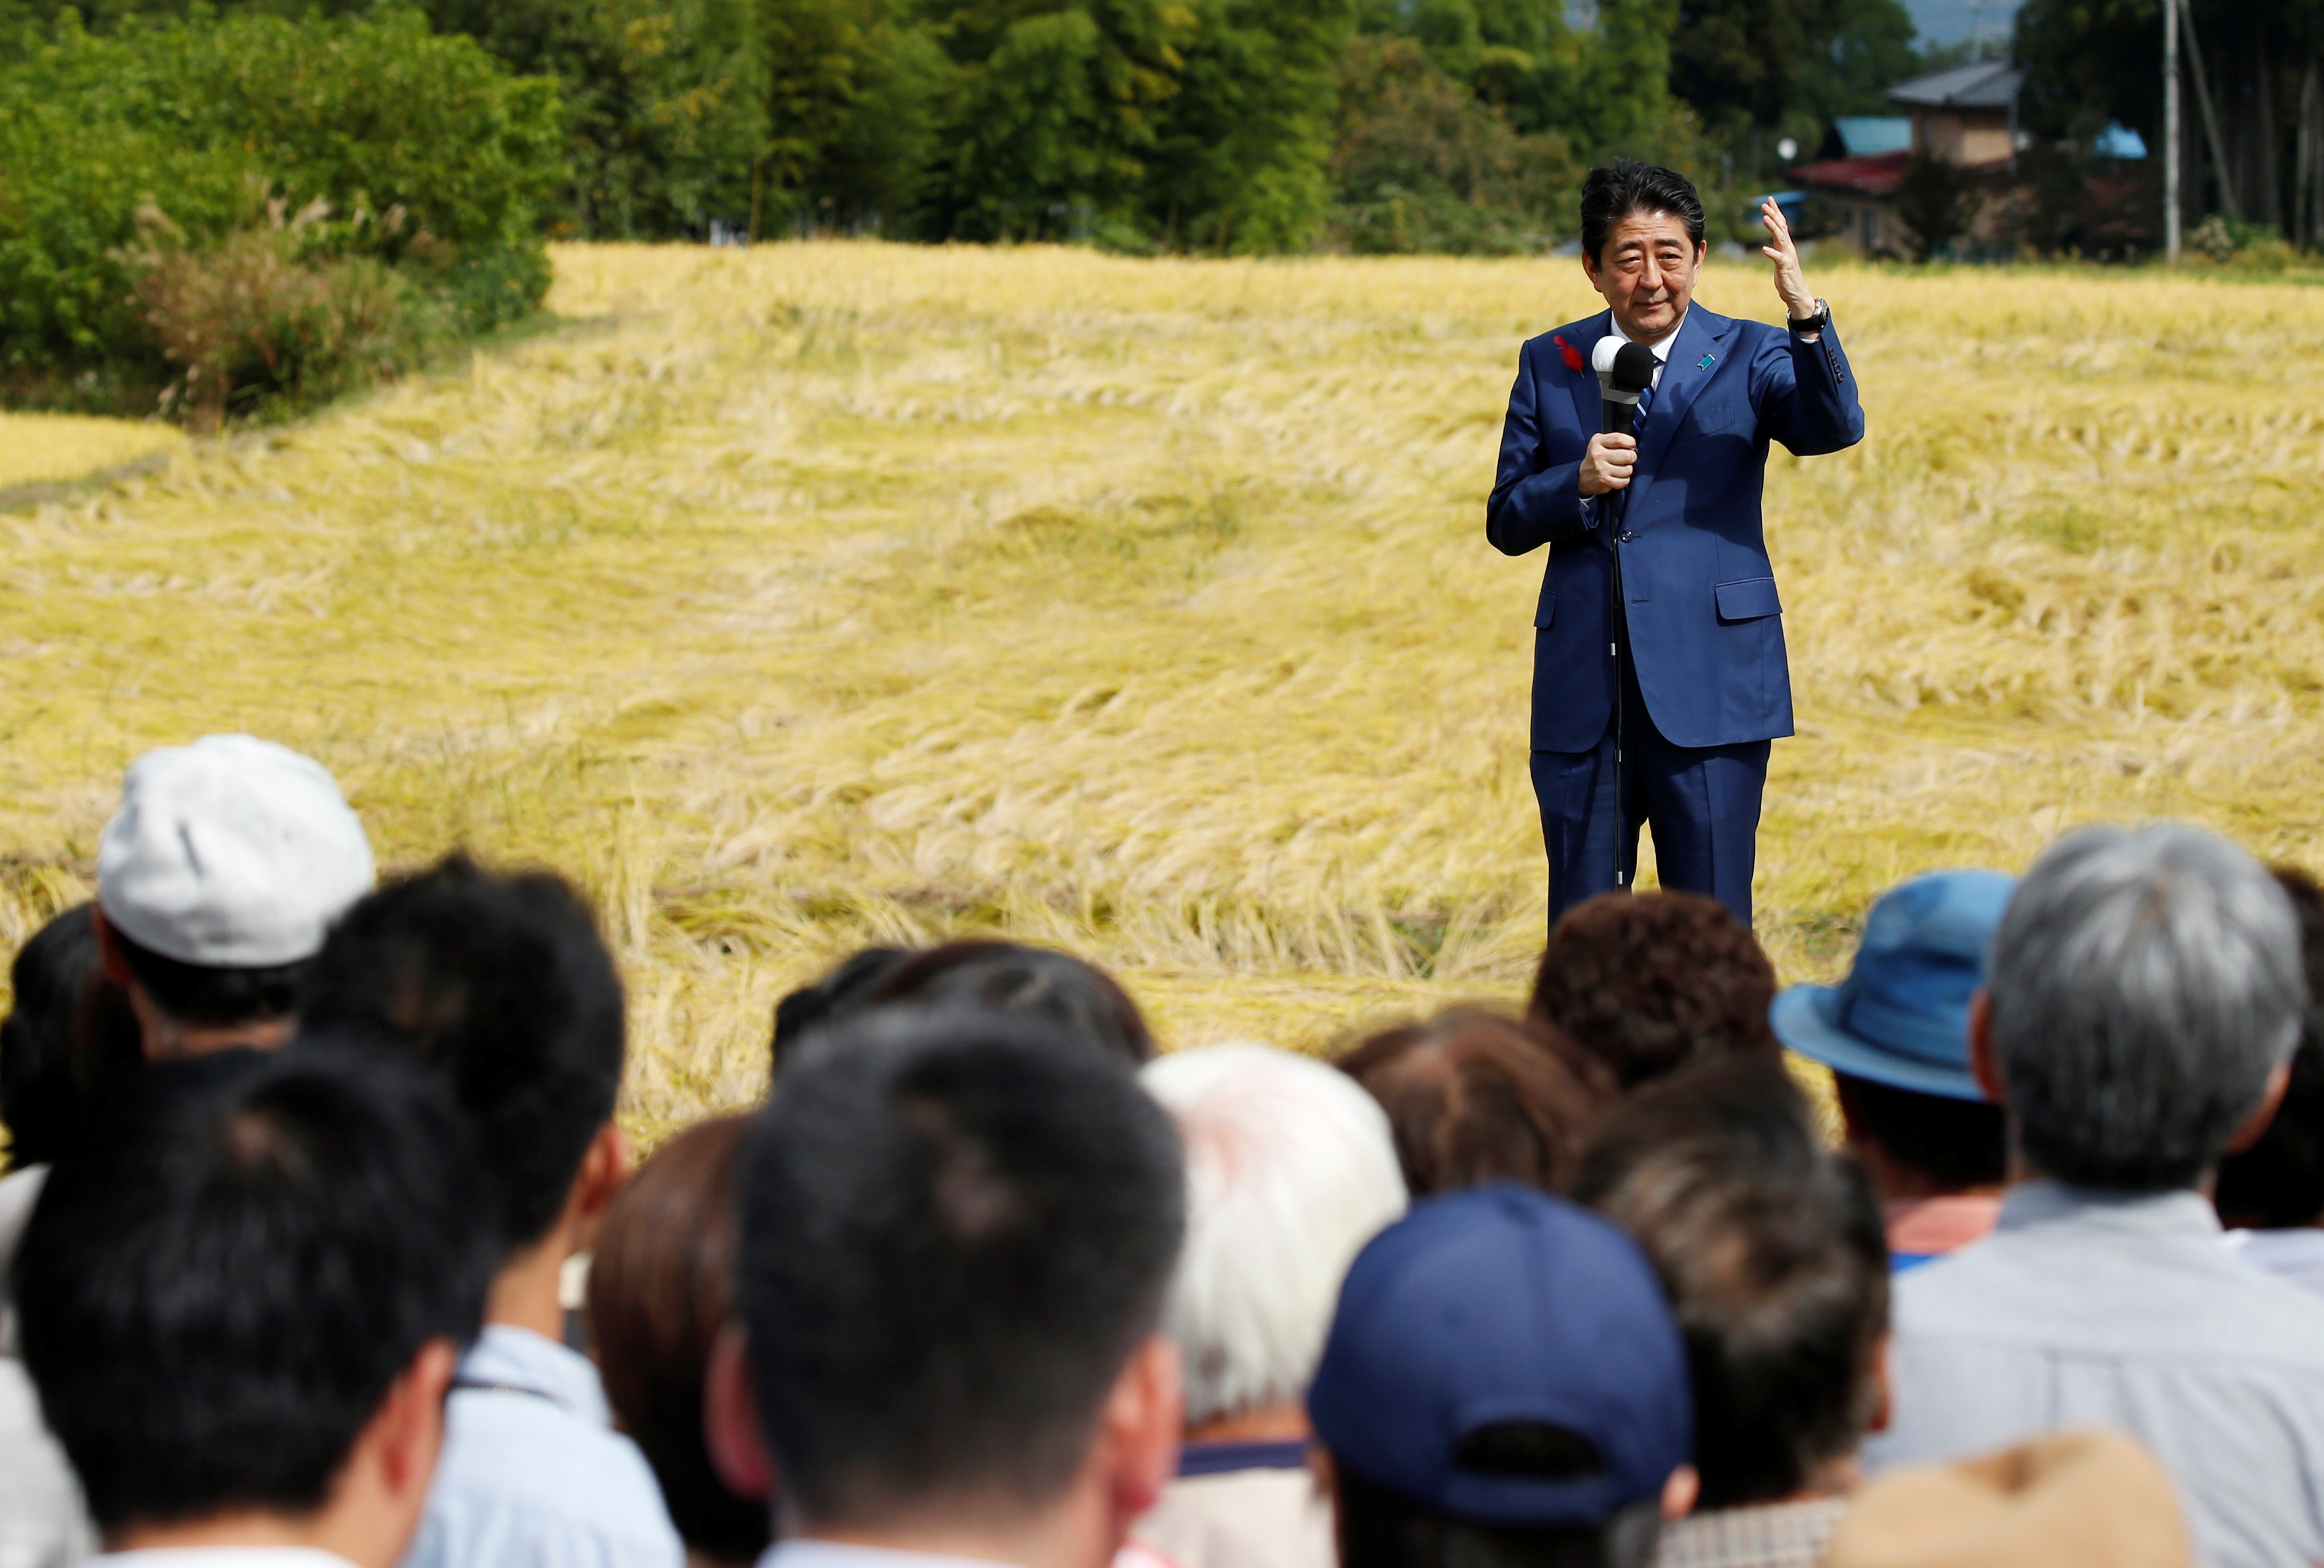 شينزو آبى يتحدث إلى أنصاره خلال جولته الانتخابية